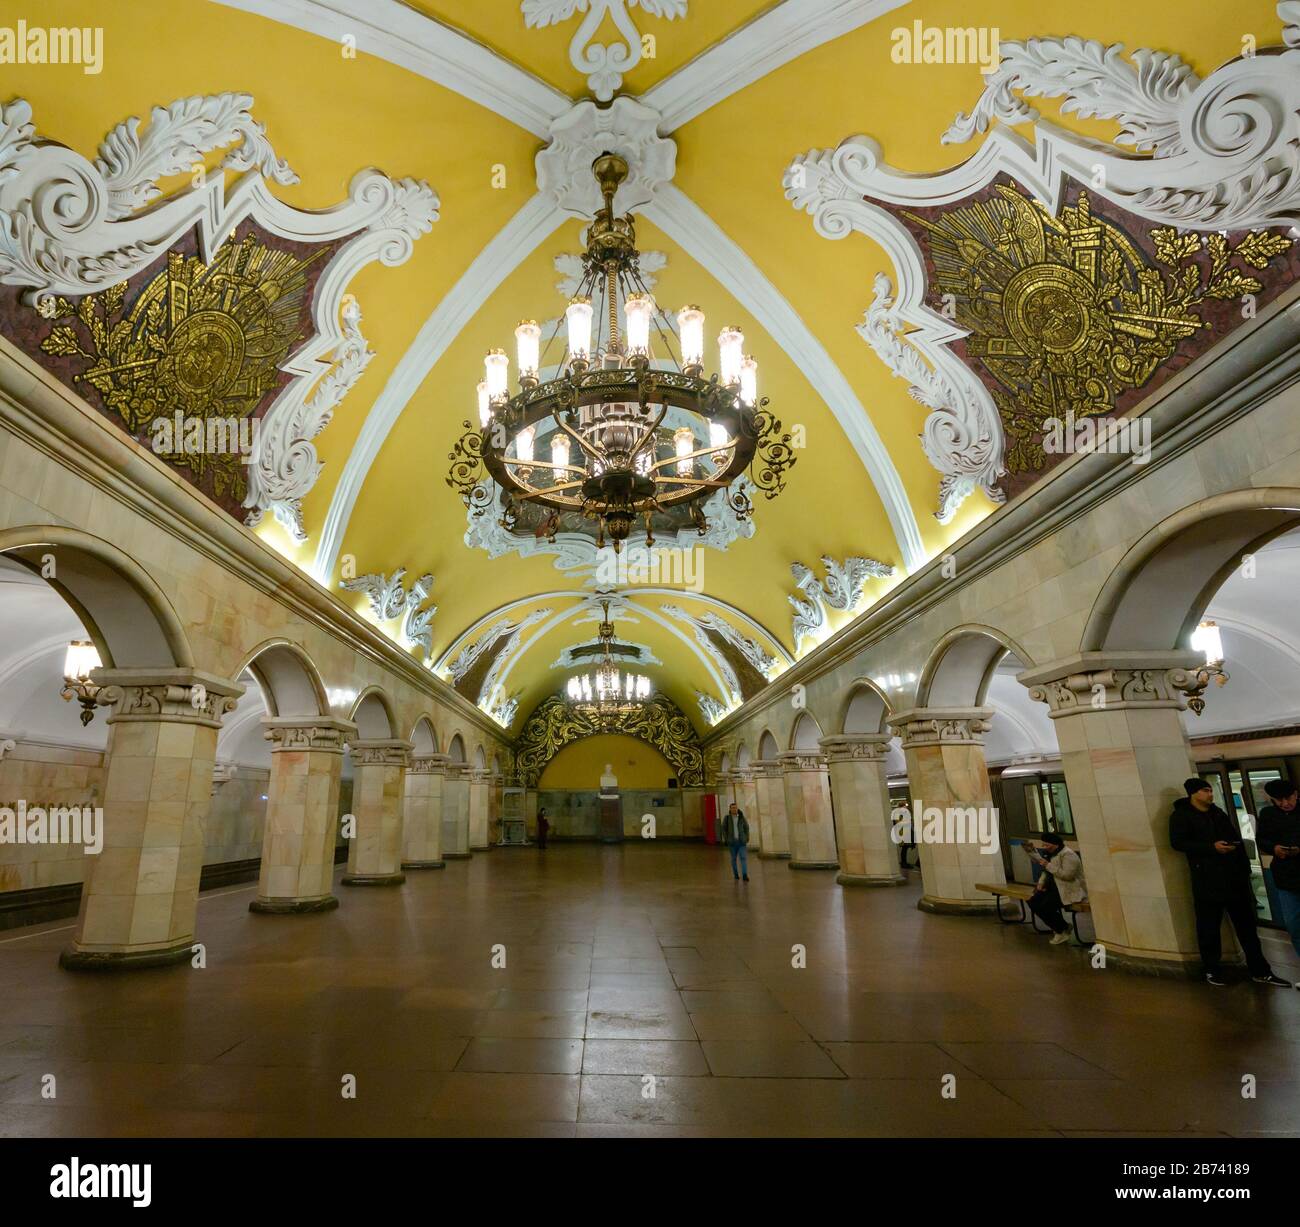 Salle voûtée ornée de chandeliers, station de métro Komsomolskaya, métro ou métro de Moscou, Fédération de Russie Banque D'Images